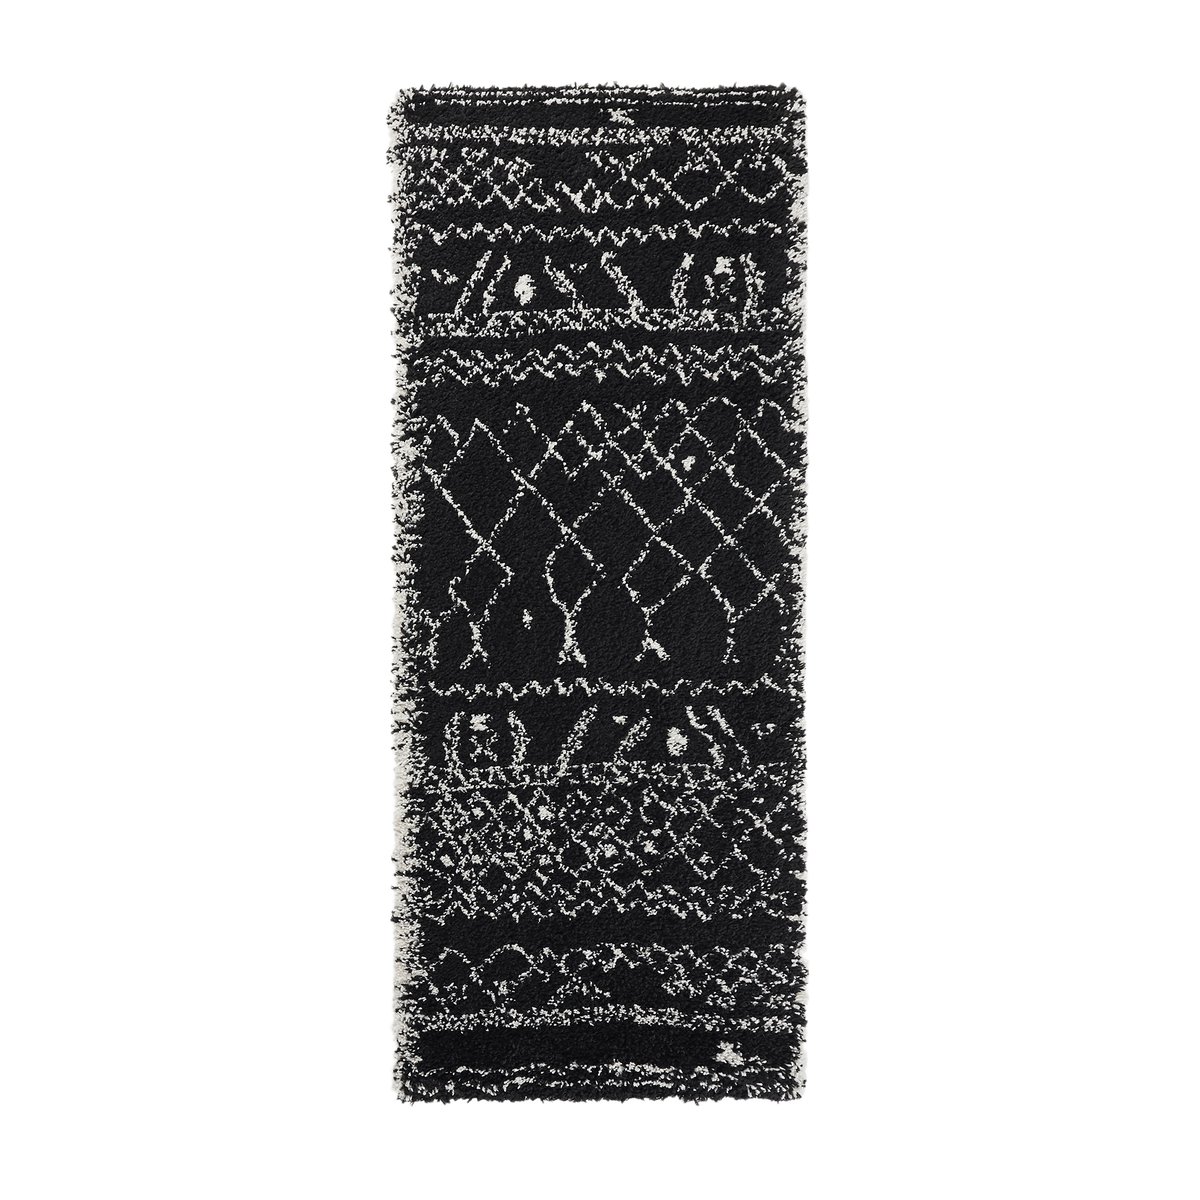 Ковер La Redoute Для коридора в берберском стиле Afaw 80 x 150 см черный, размер 80 x 150 см - фото 1